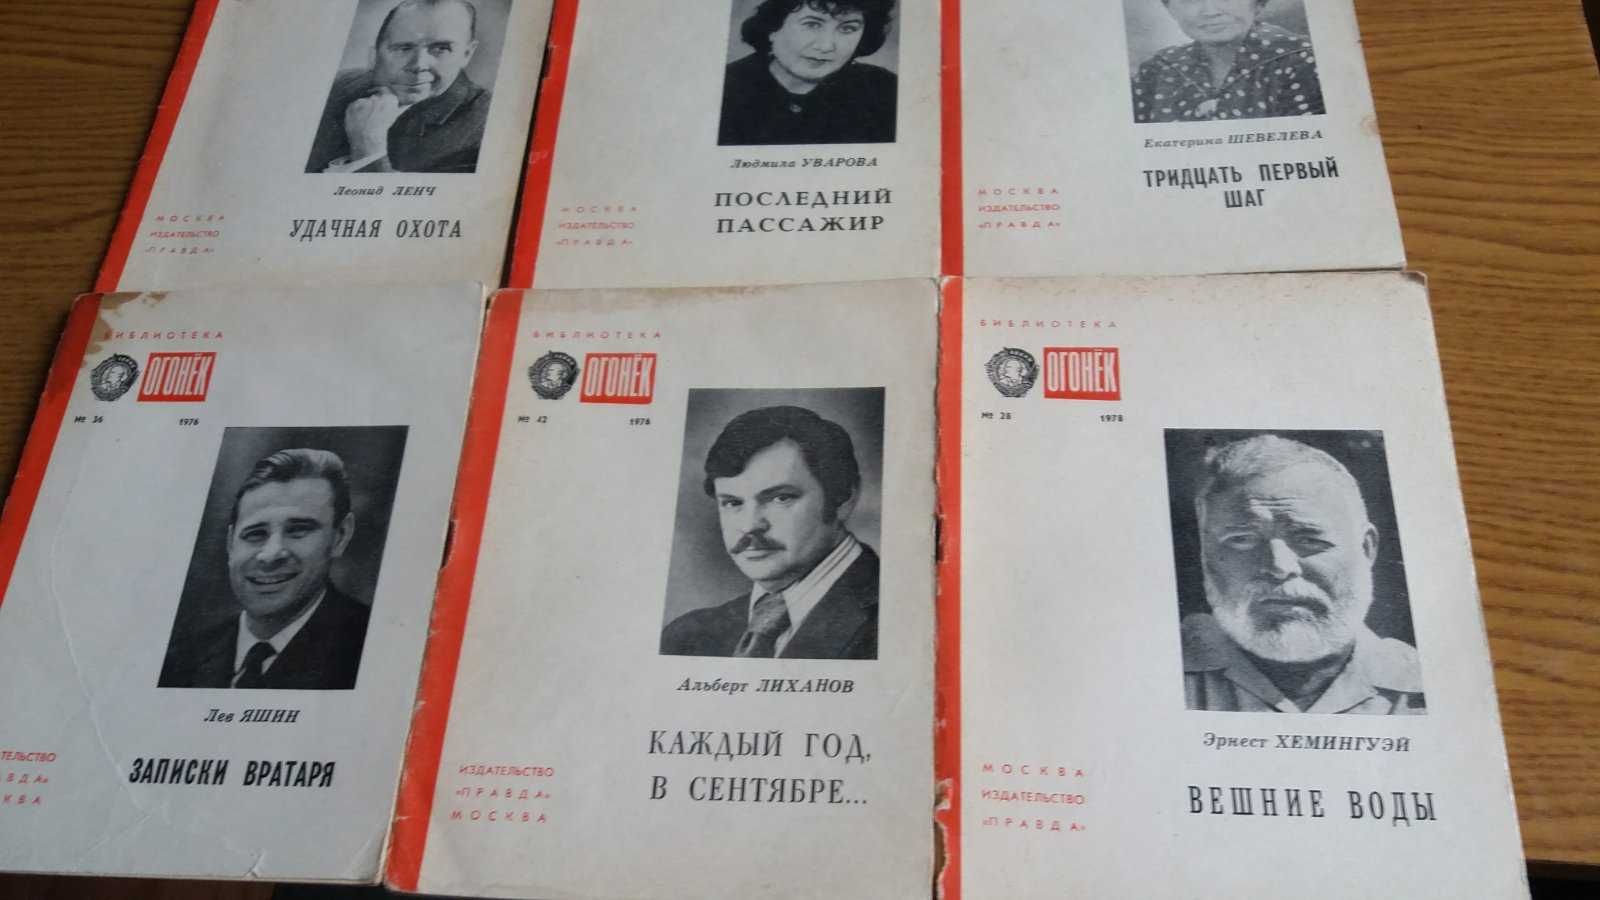 бібліотека журнала  "Огонек"1964-1991р